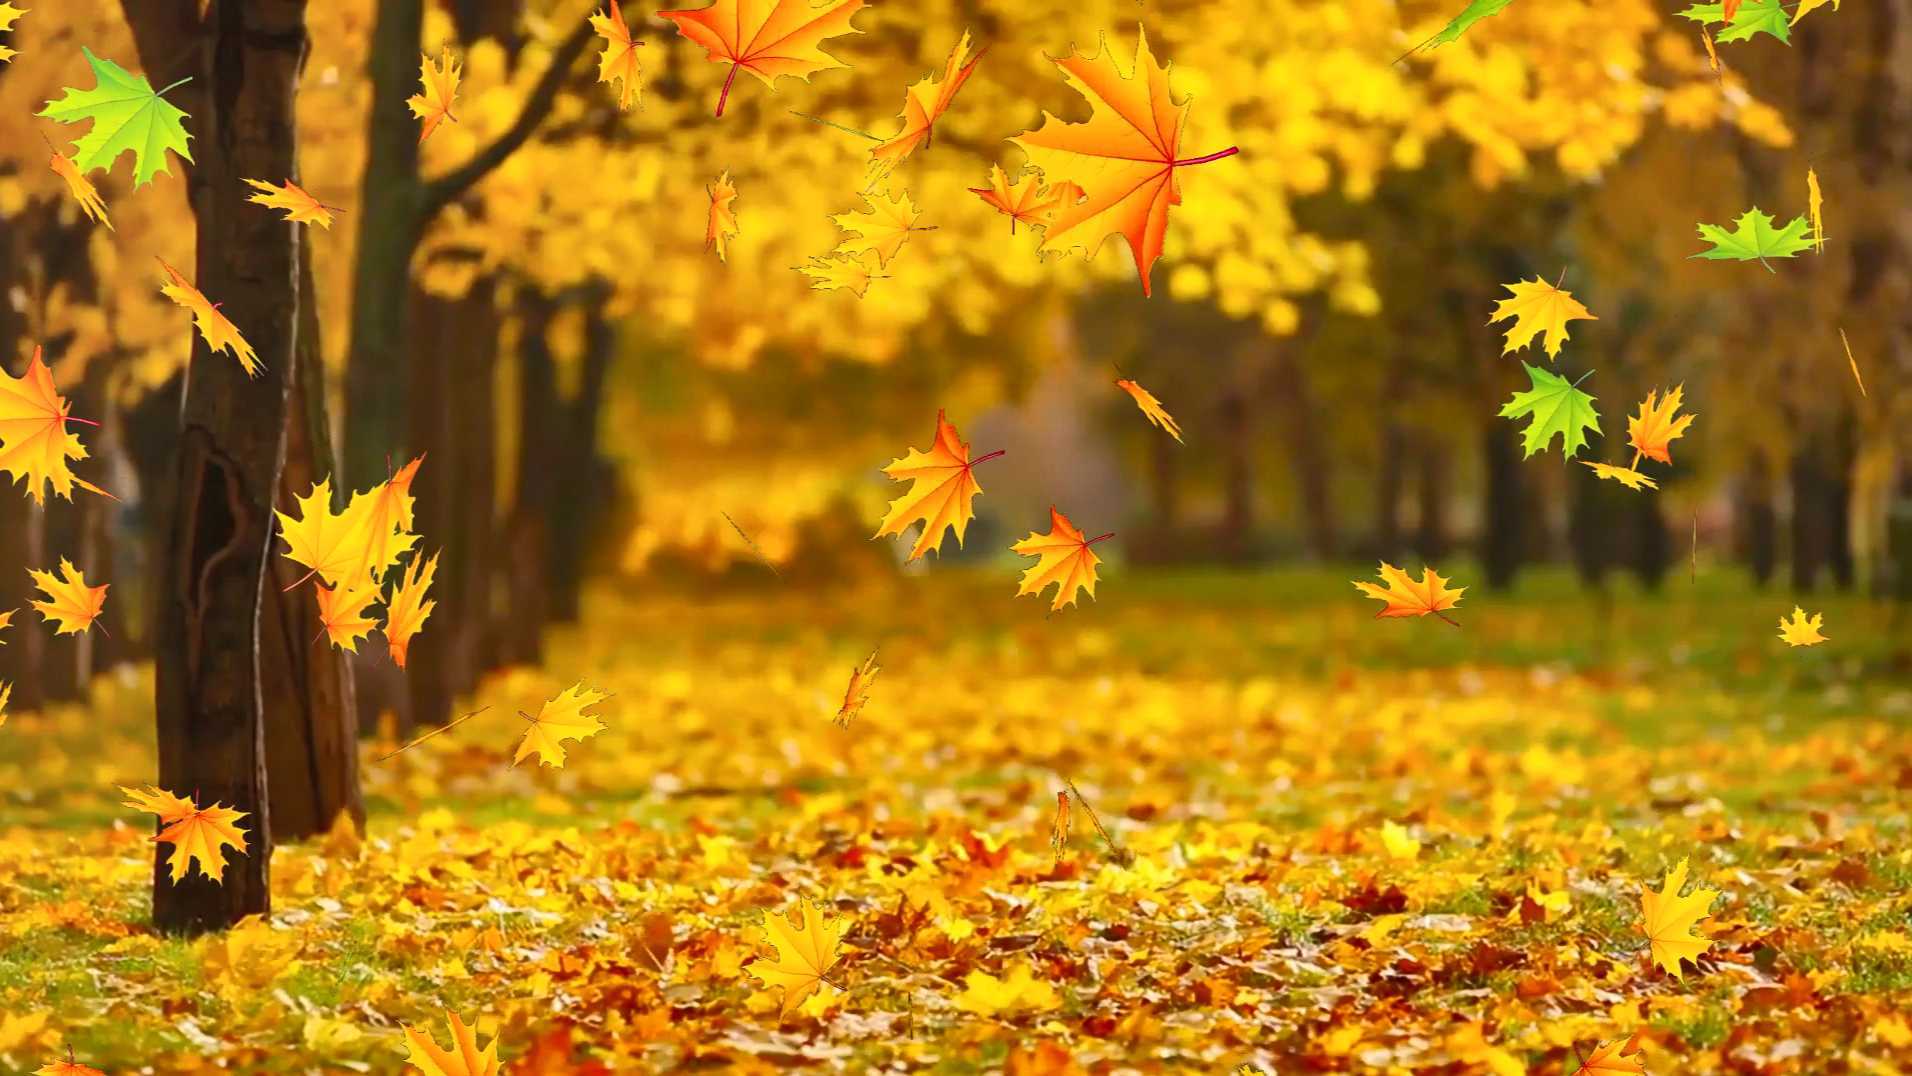 正在飘落的金黄色的树叶铺满道路